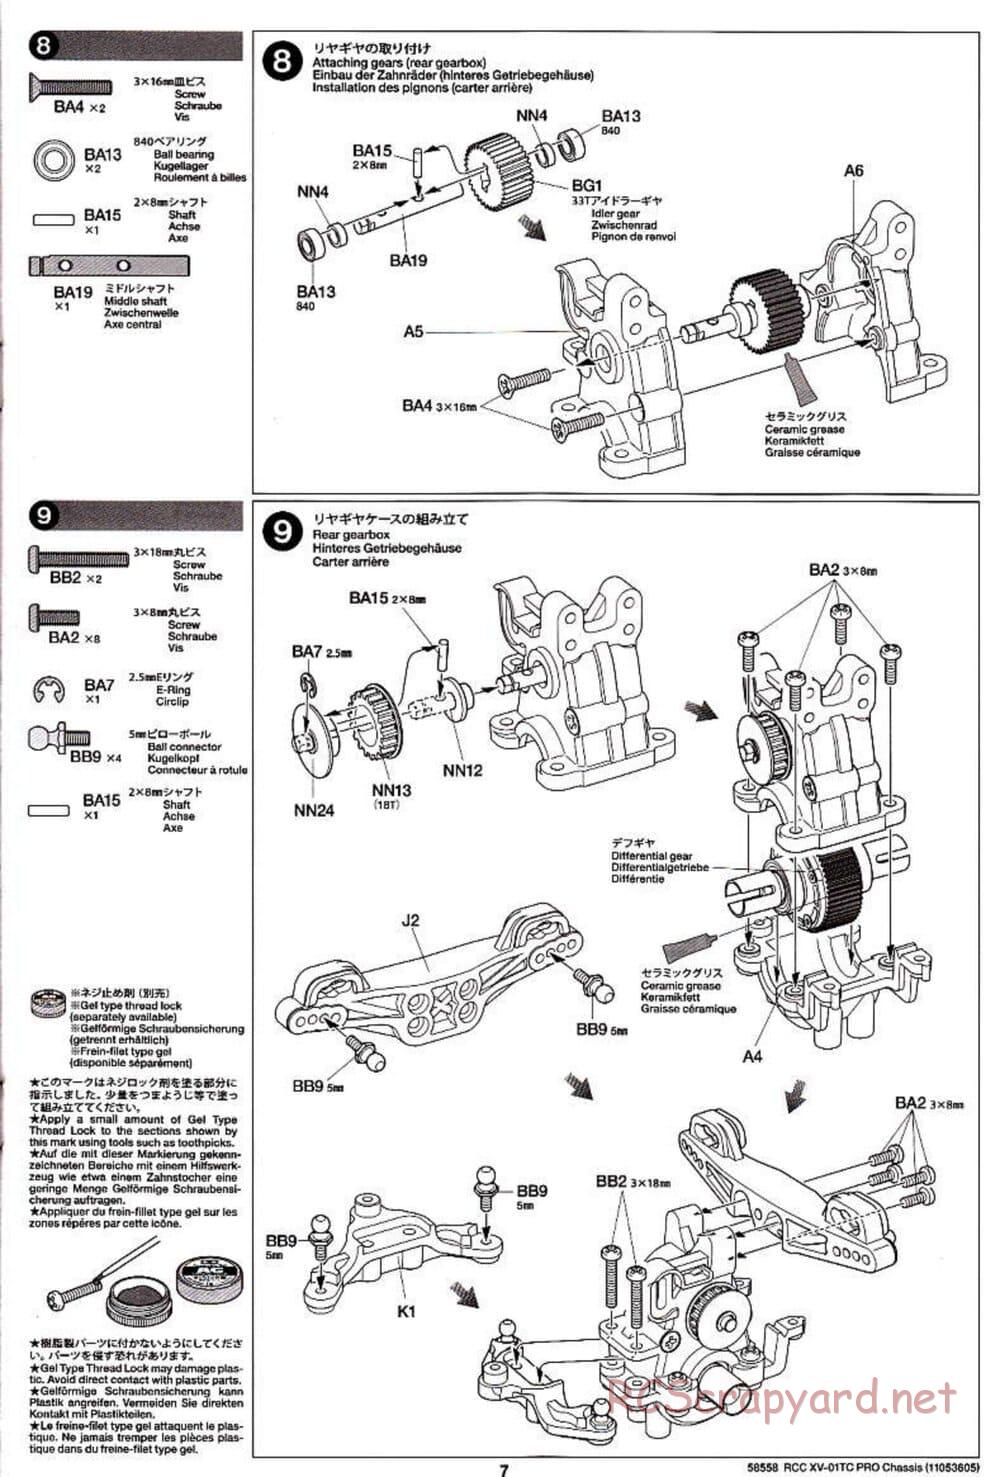 Tamiya - XV-01TC Chassis - Manual - Page 7